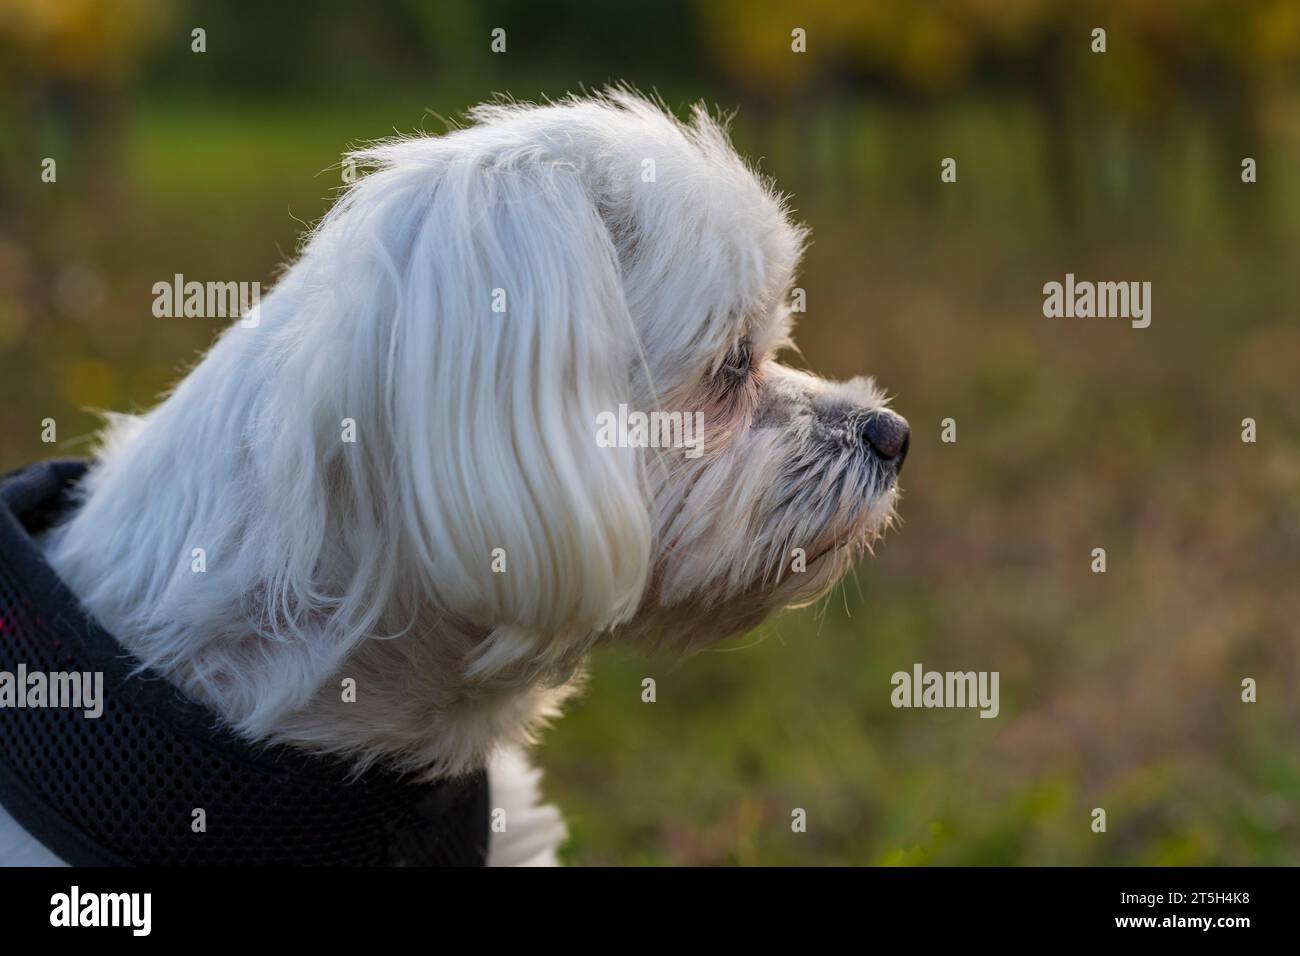 Chien maltais - chien blanc dans une prairie au soleil couchant Banque D'Images